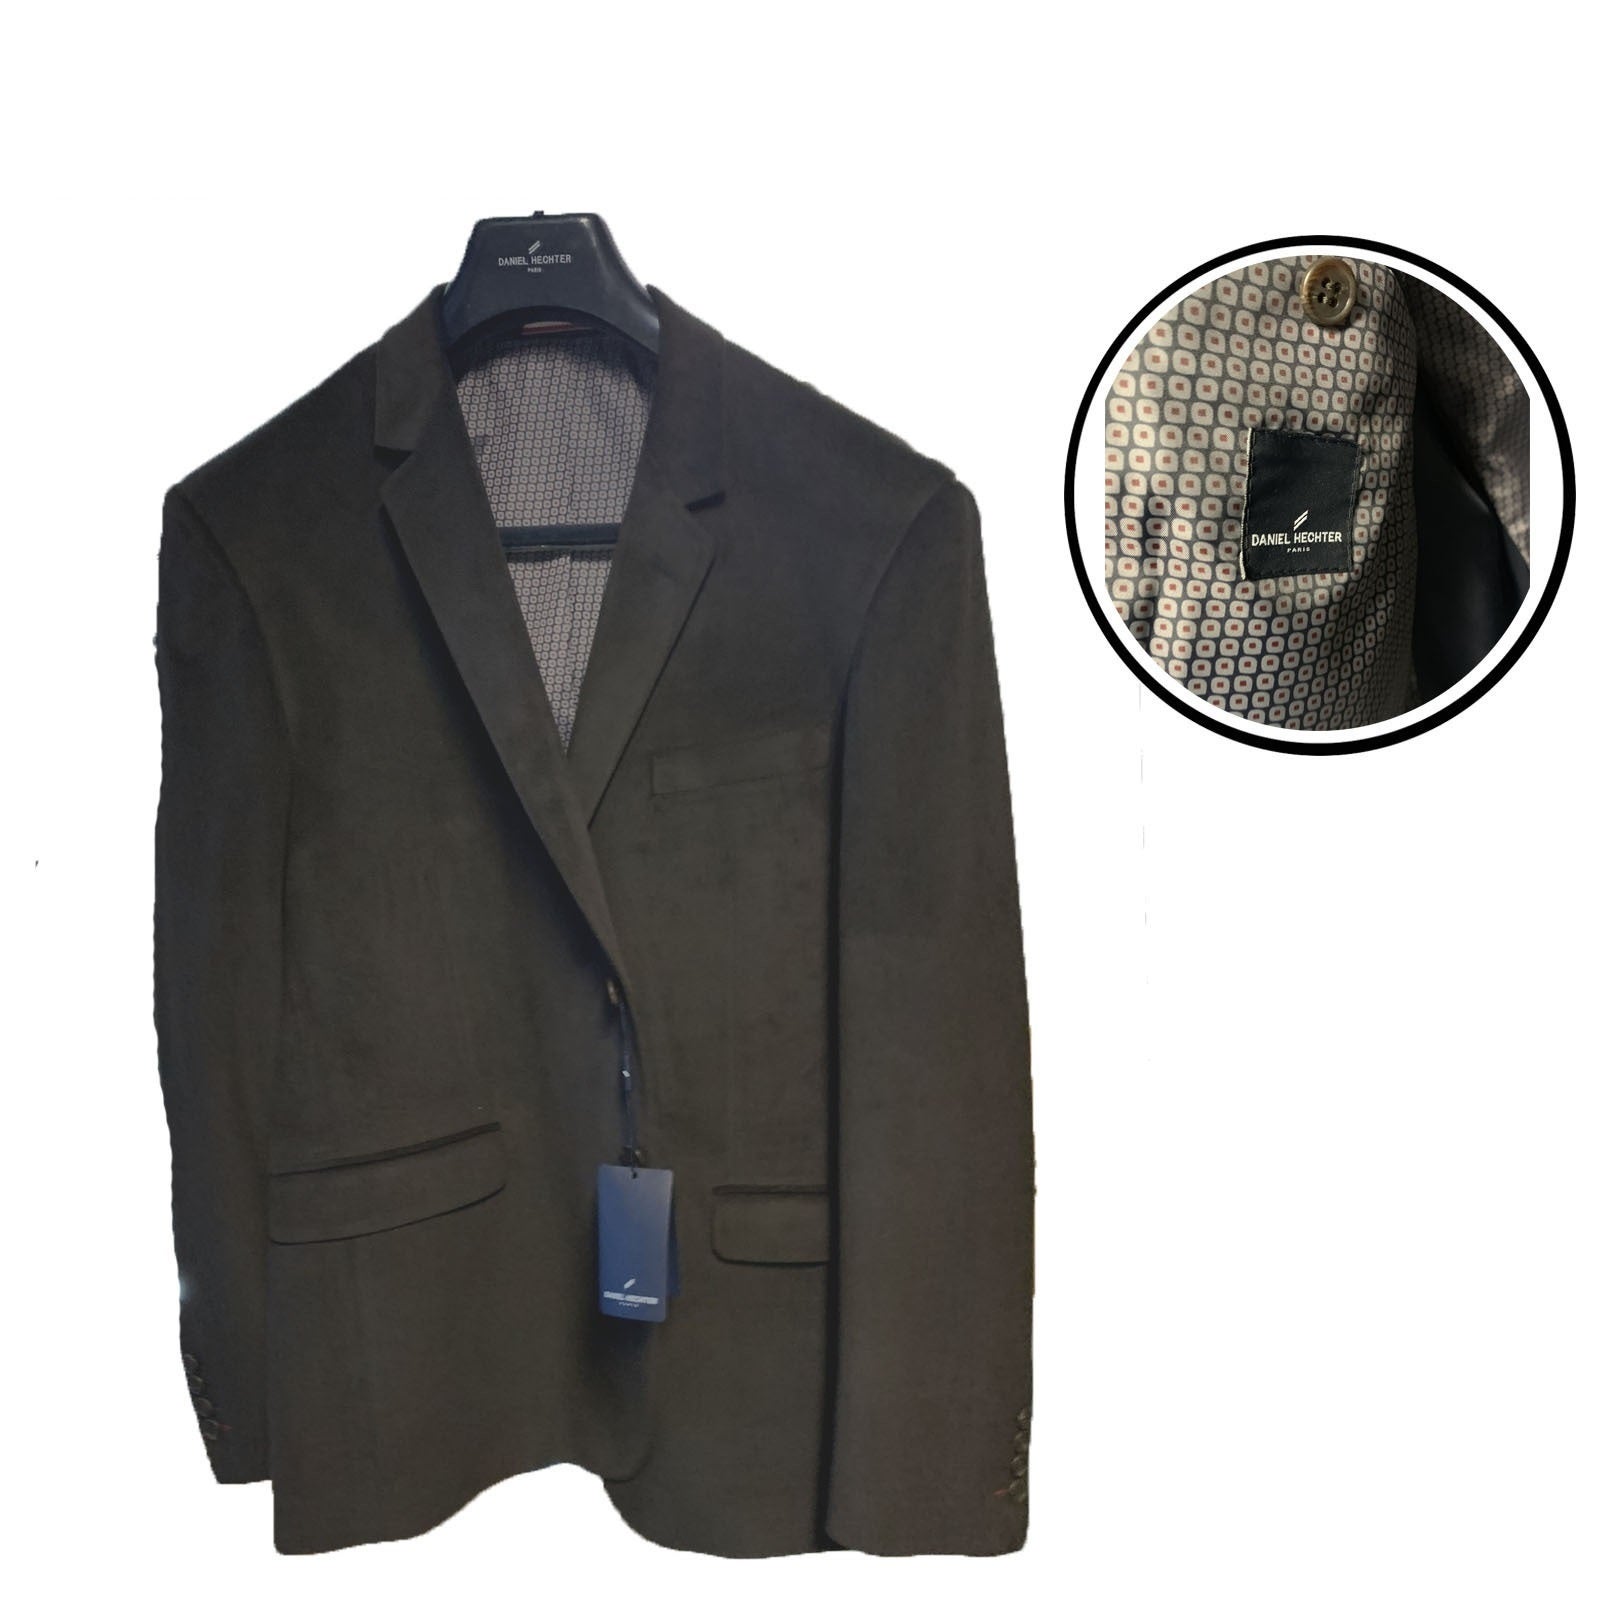 Daniel Hechter Men's Sports Coat Jacket Classic Blazer - Brown | Buy ...